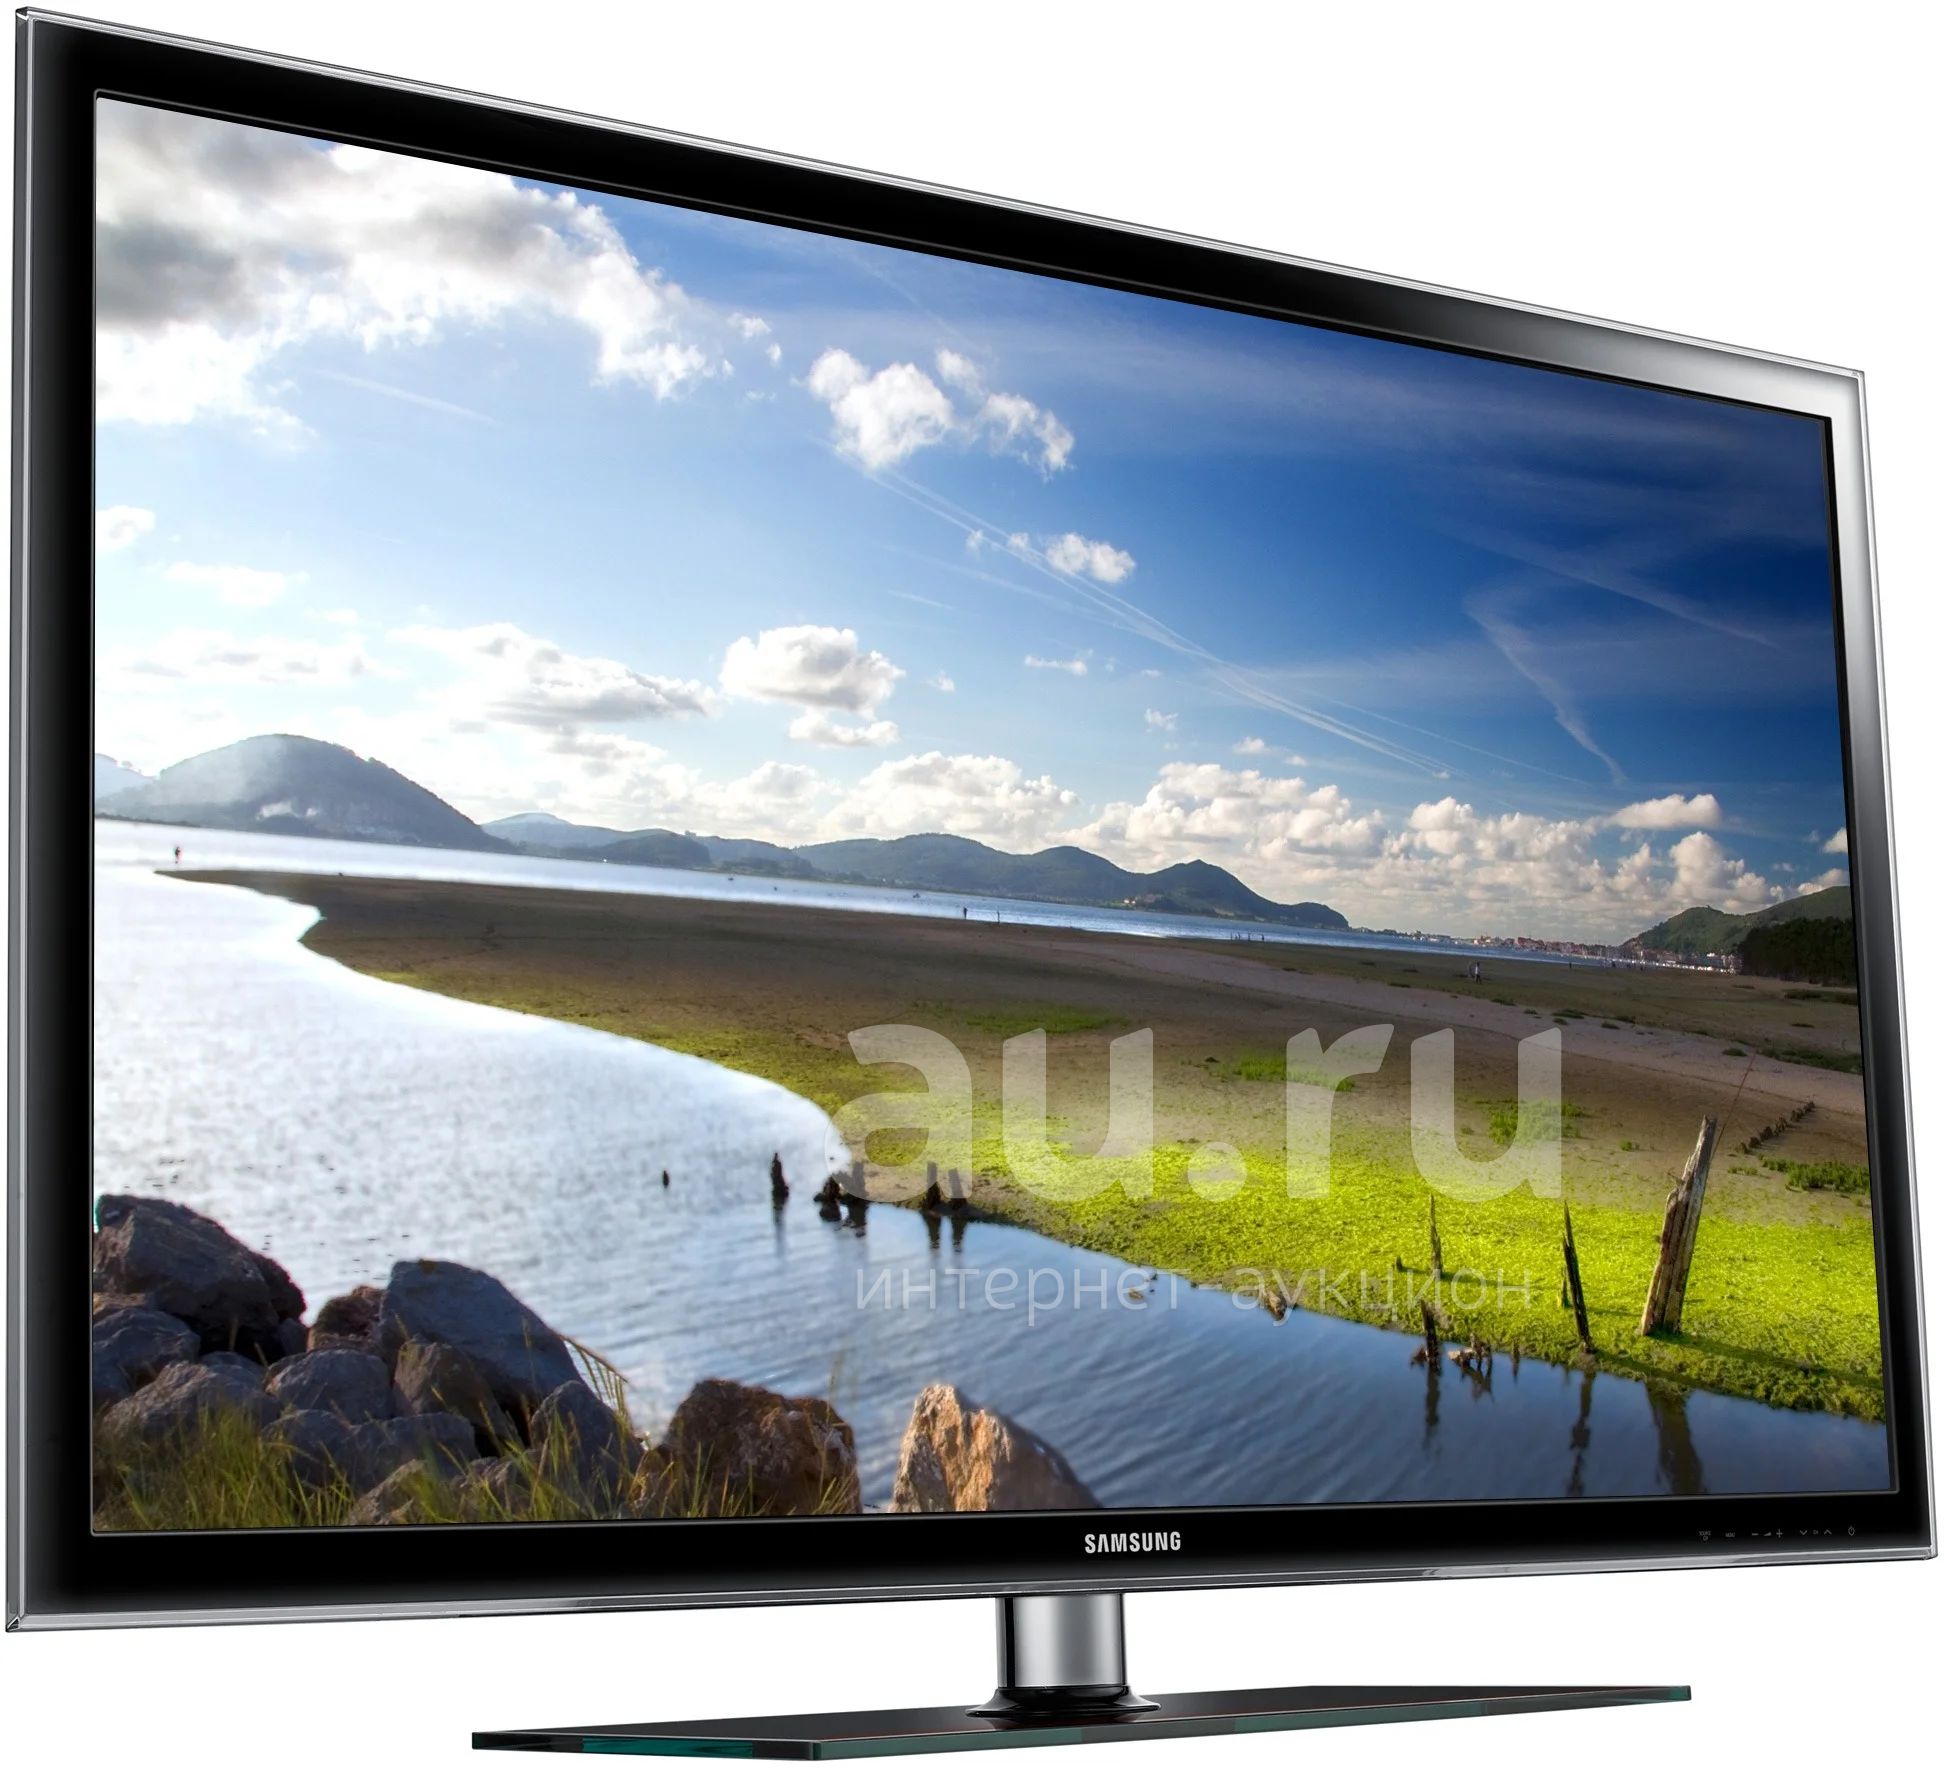 Купить телевизор в сочи. Samsung ue32h5000. Телевизор Samsung ue32d5000. Телевизор самсунг ue32d5000pw. Телевизор Samsung ue32d5000 32".